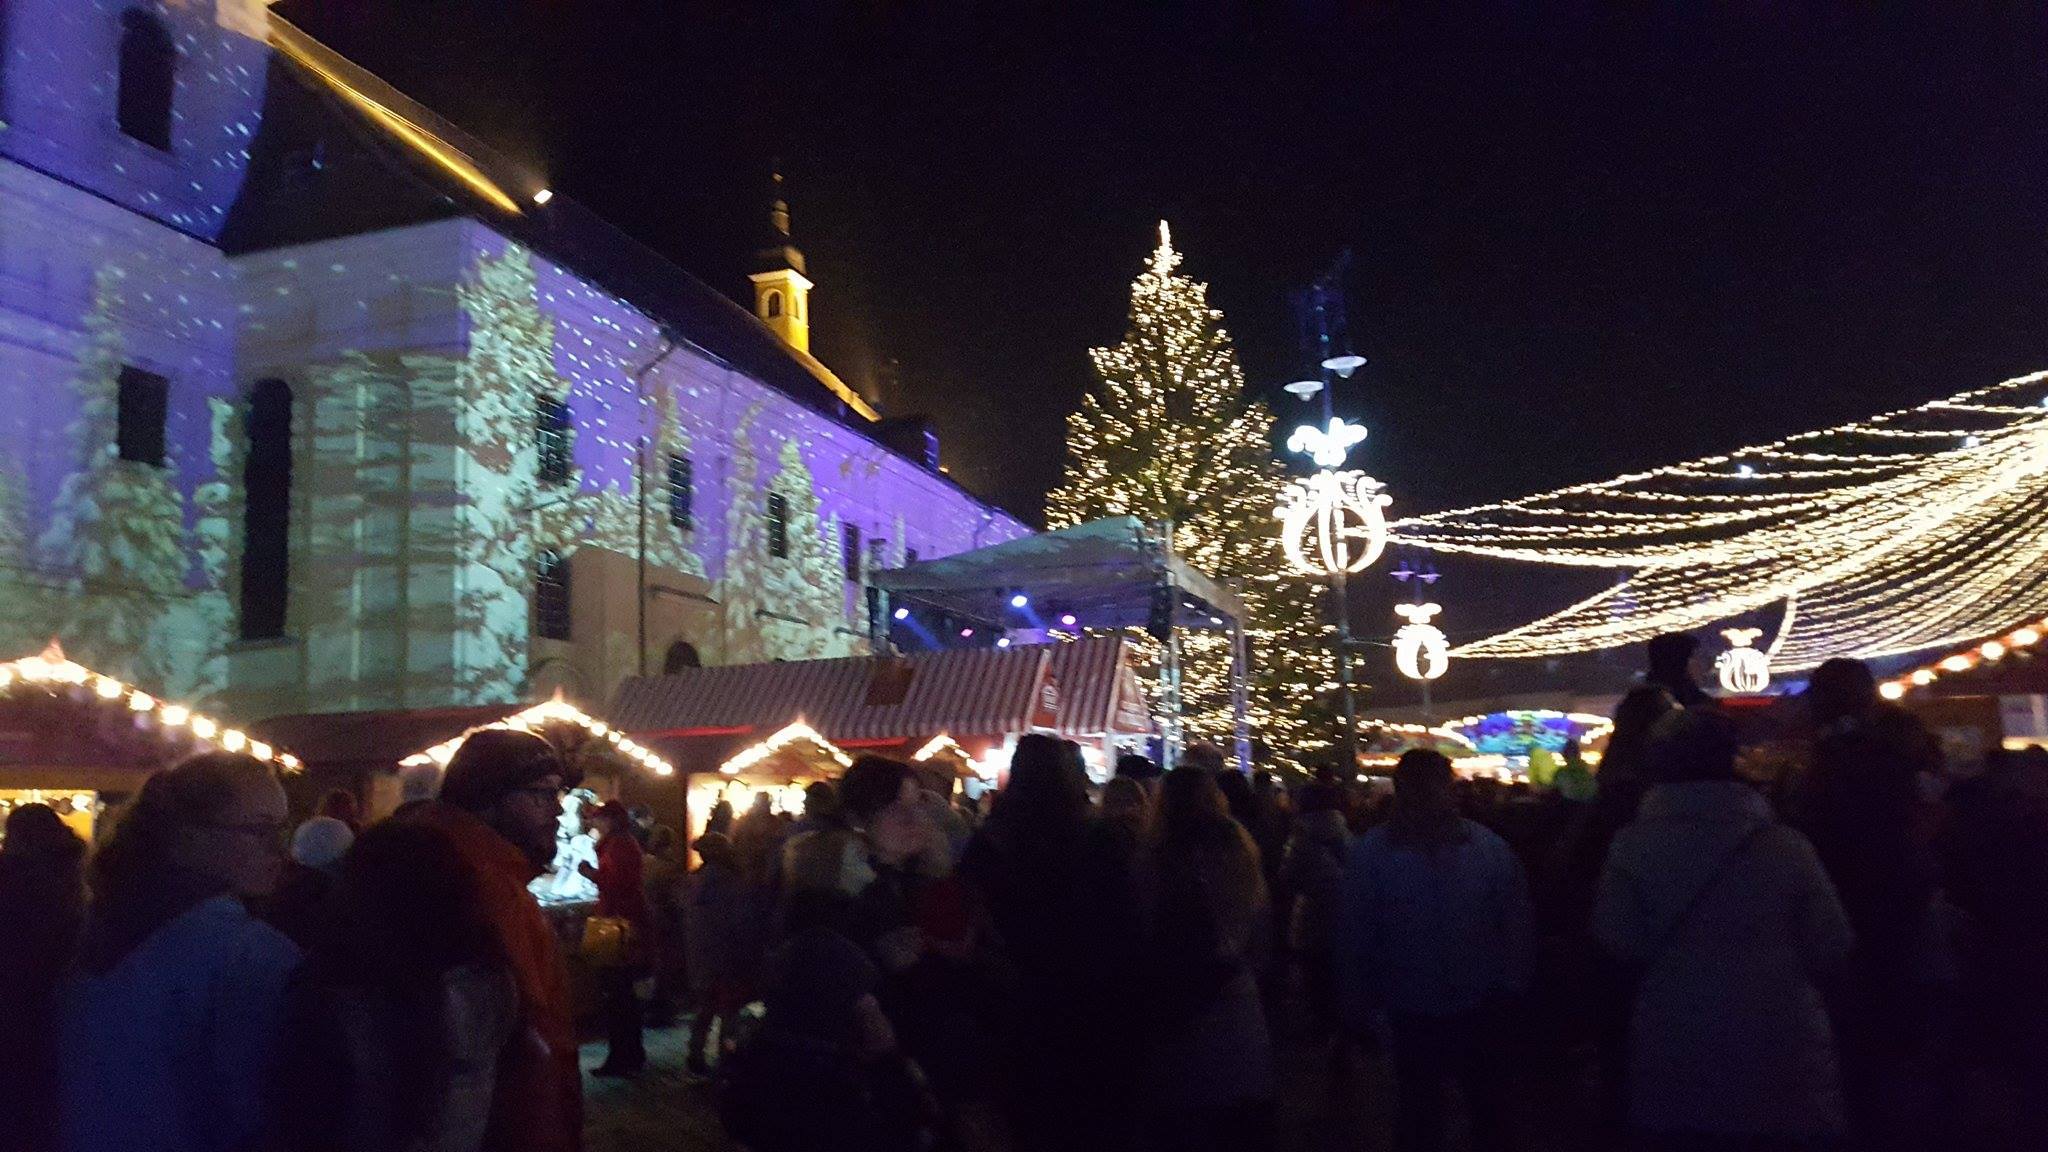 Faimosul târg de Crăciun din Budapesta se deschide cu preţuri de groază